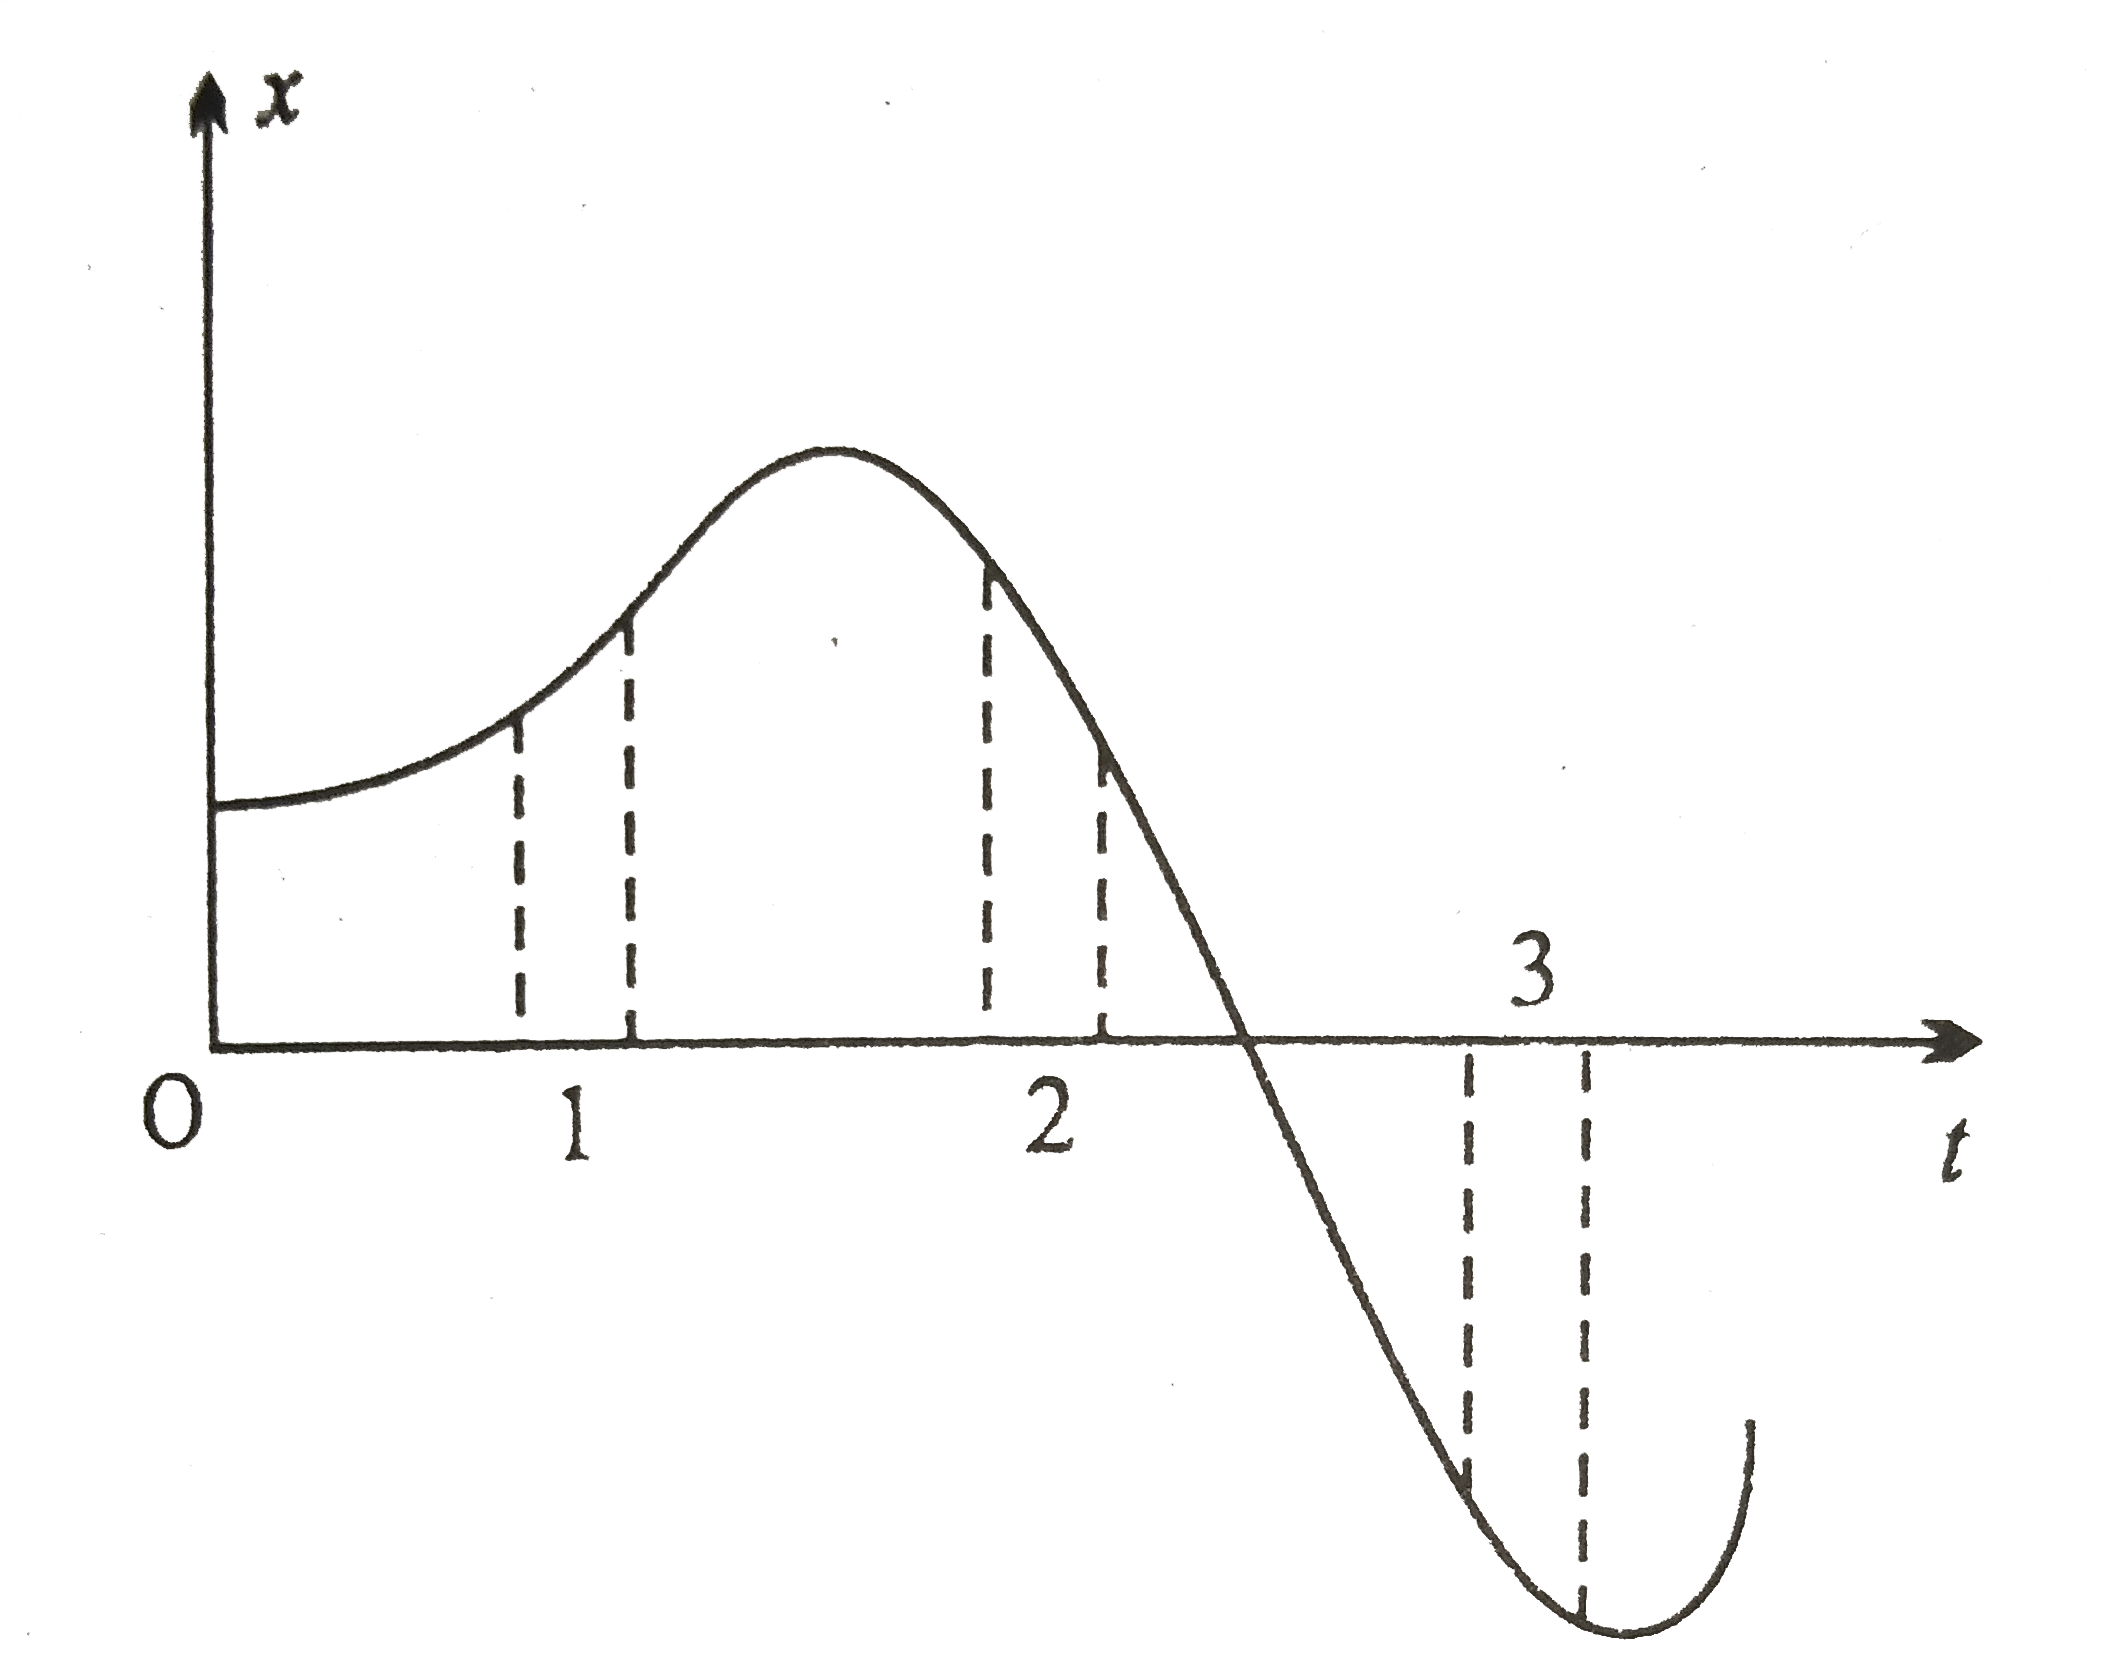 चित्र में एकविमीय गति के लिए x-t ग्राफ प्रदर्शित किया गया है । इसमें तीन विभिन्न समान समयांतराल प्रदर्शित किये गए  हैं । किस अंतराल में औसत चाल सबसे अधिक और antaraa में सबसे कम है ? प्रत्येक समयांतराल के लिए औसत का चिन्ह बताइए ।